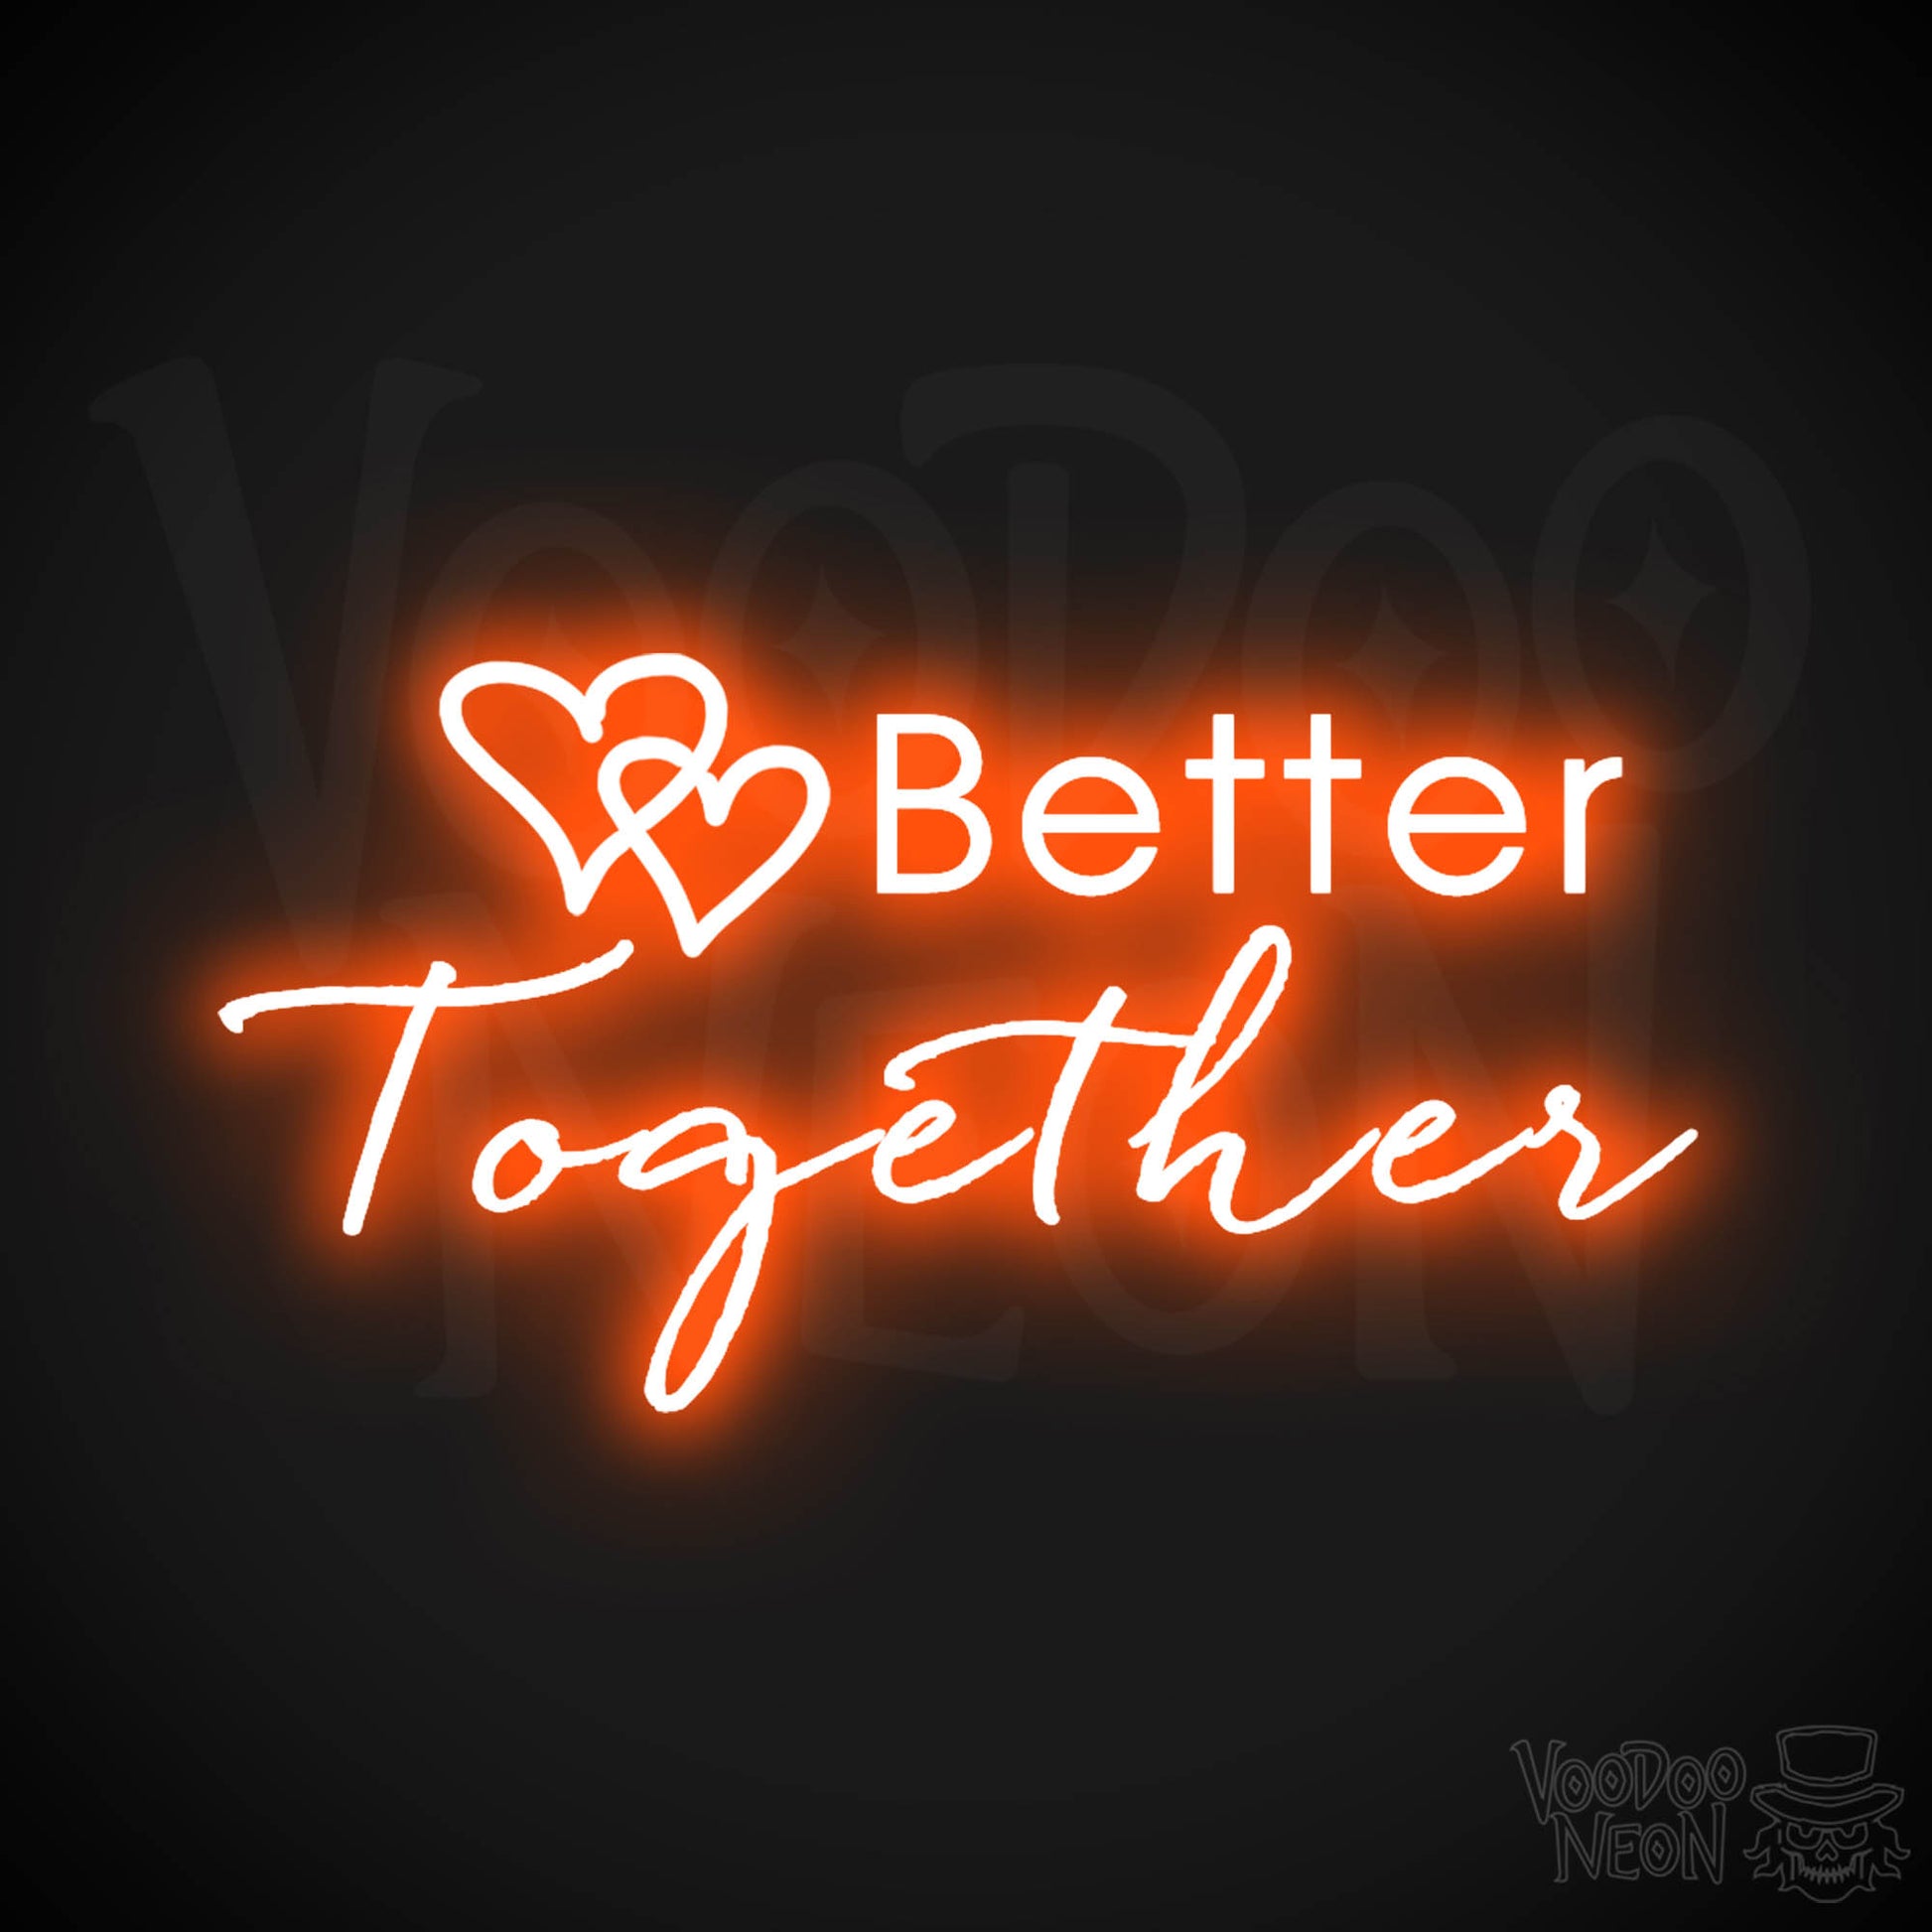 Better Together Neon Sign - Neon Better Together Sign - LED Light Up - Color Orange